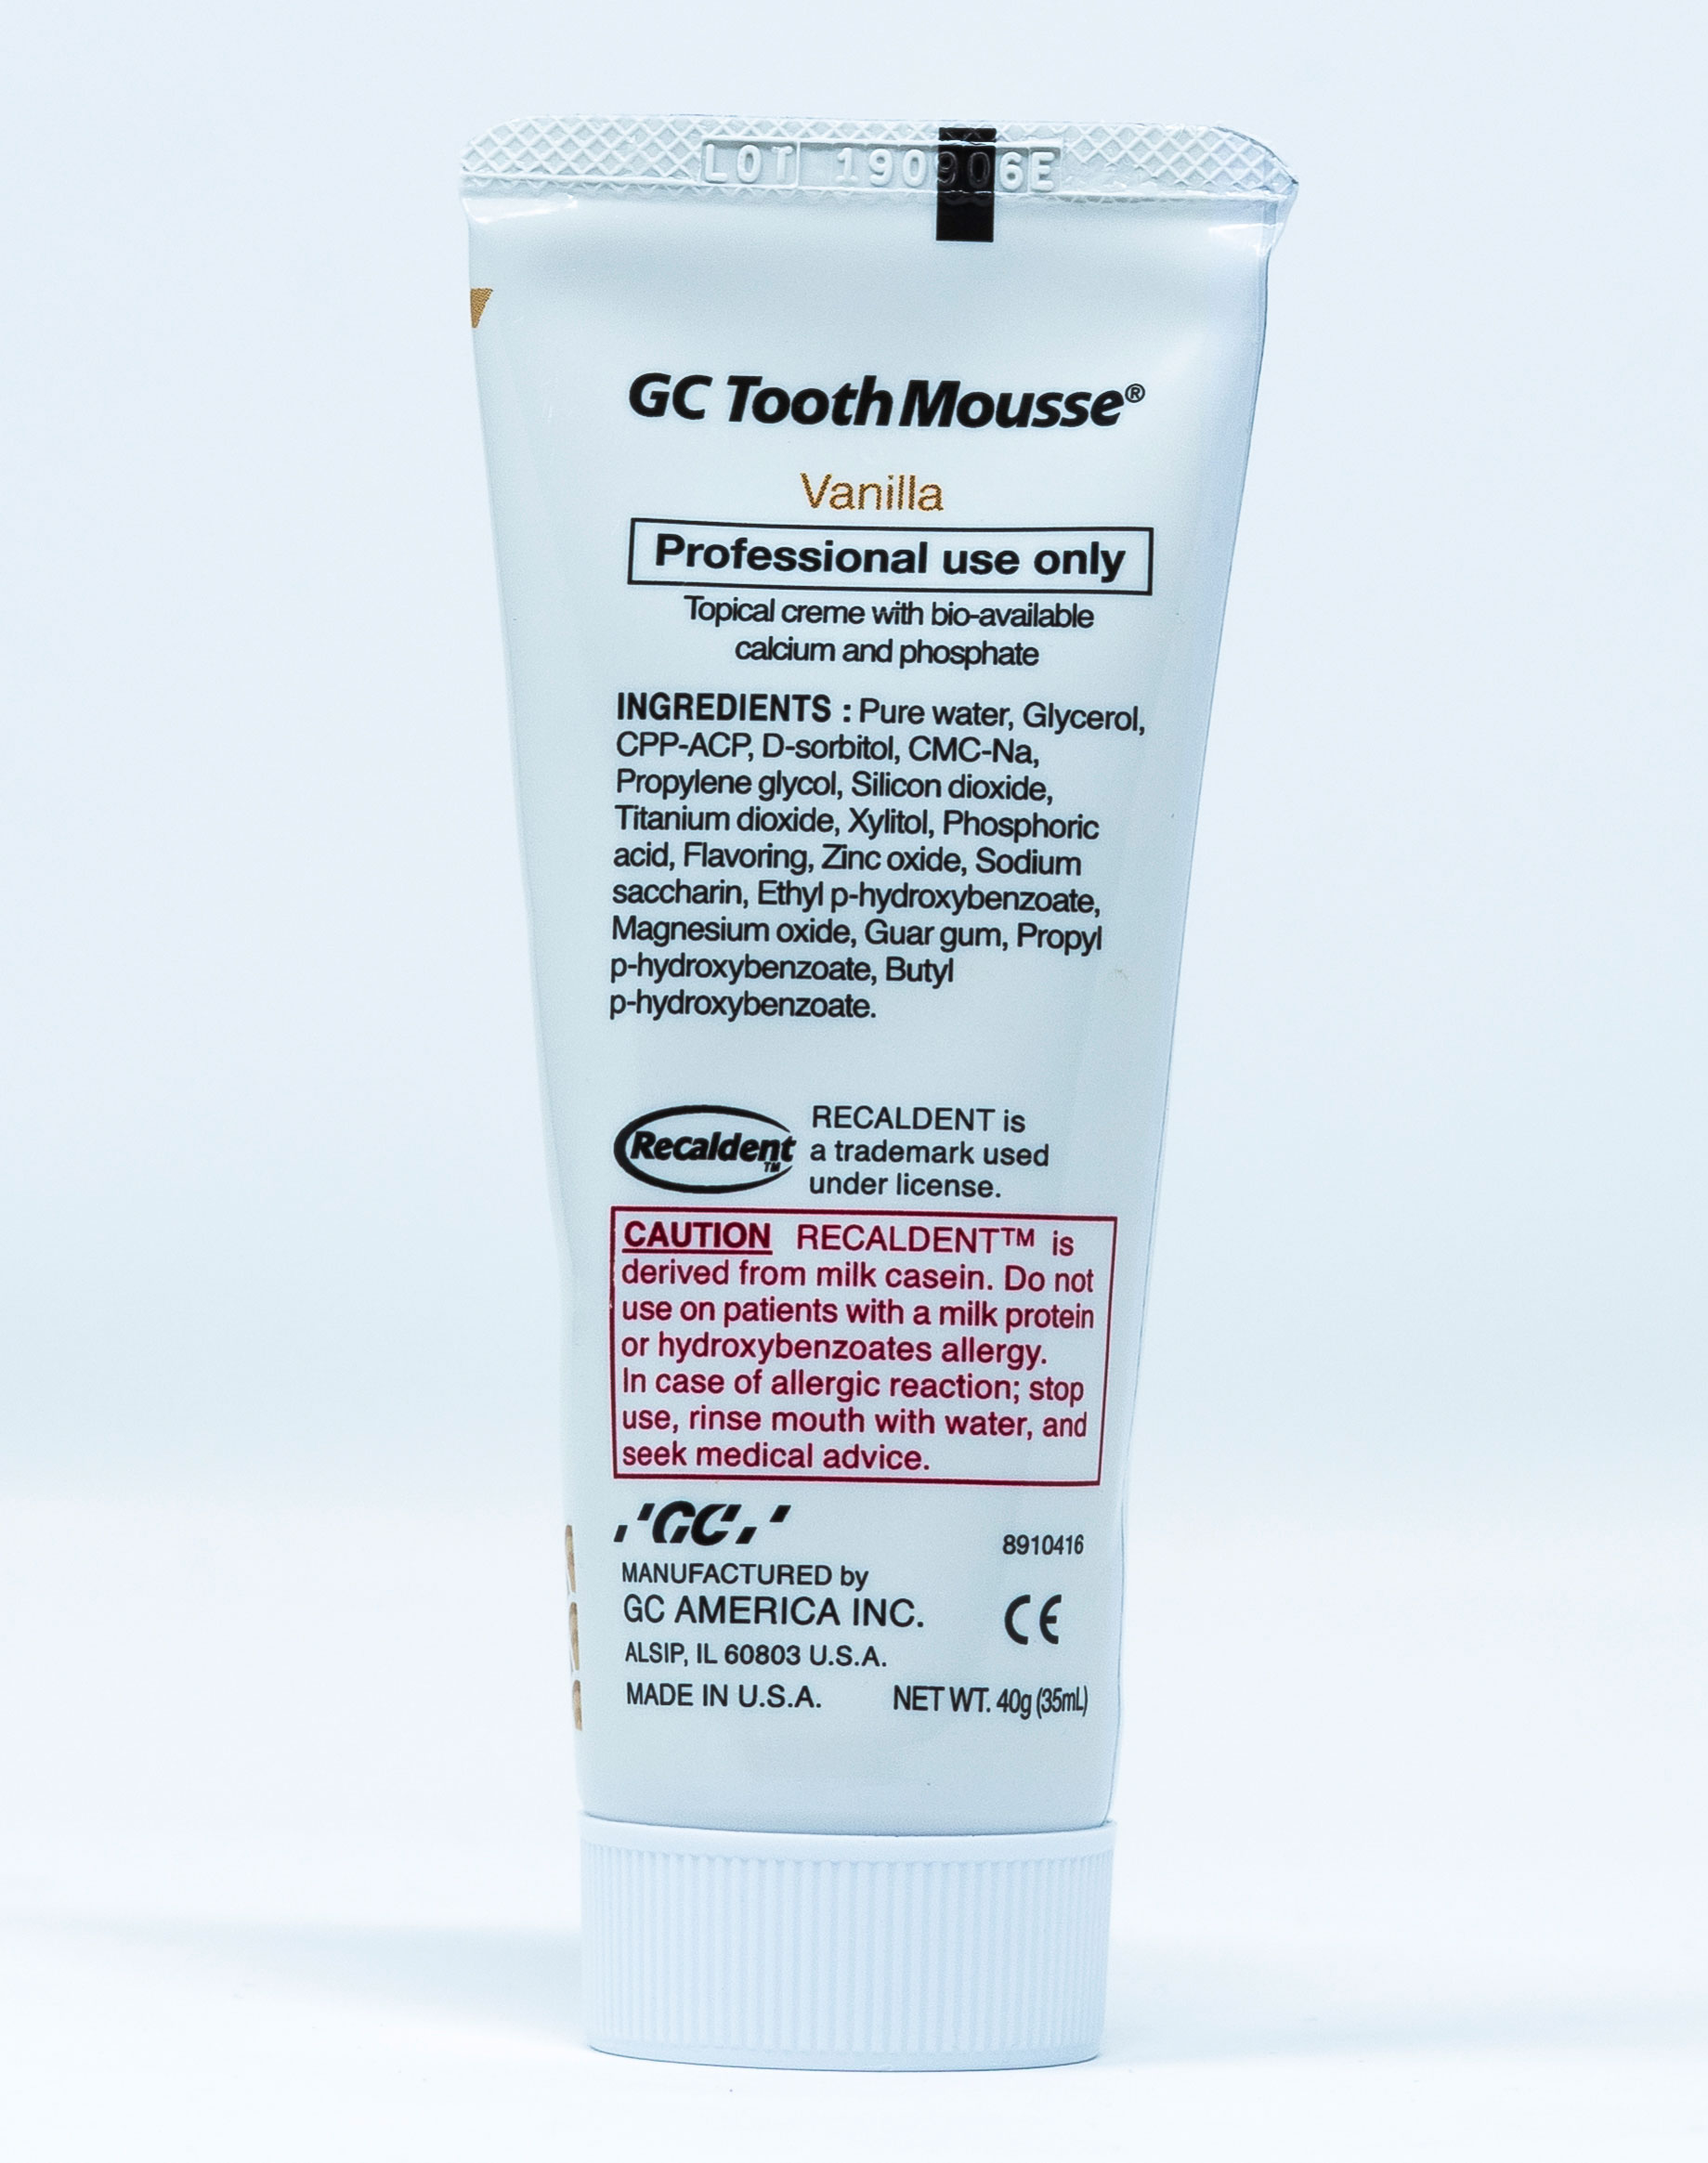 GC Crema Remineralizzante Tooth Mousse Vaniglia - 40 g